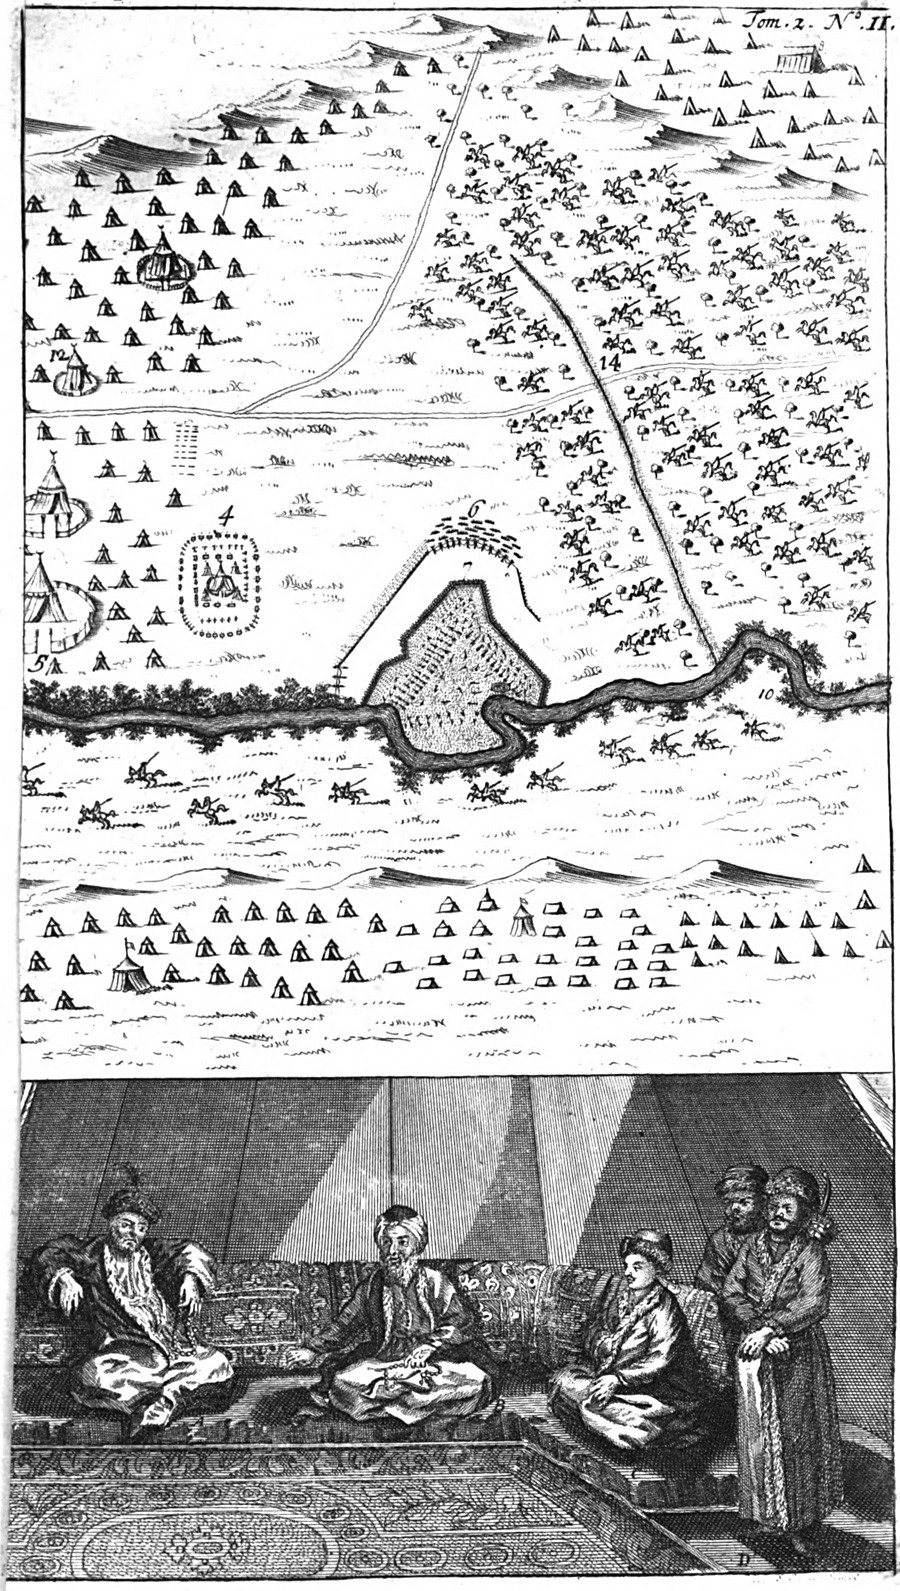 Lo schieramento degli eserciti nella guerra russo-ottomana, illustrazione di William Hogarth 